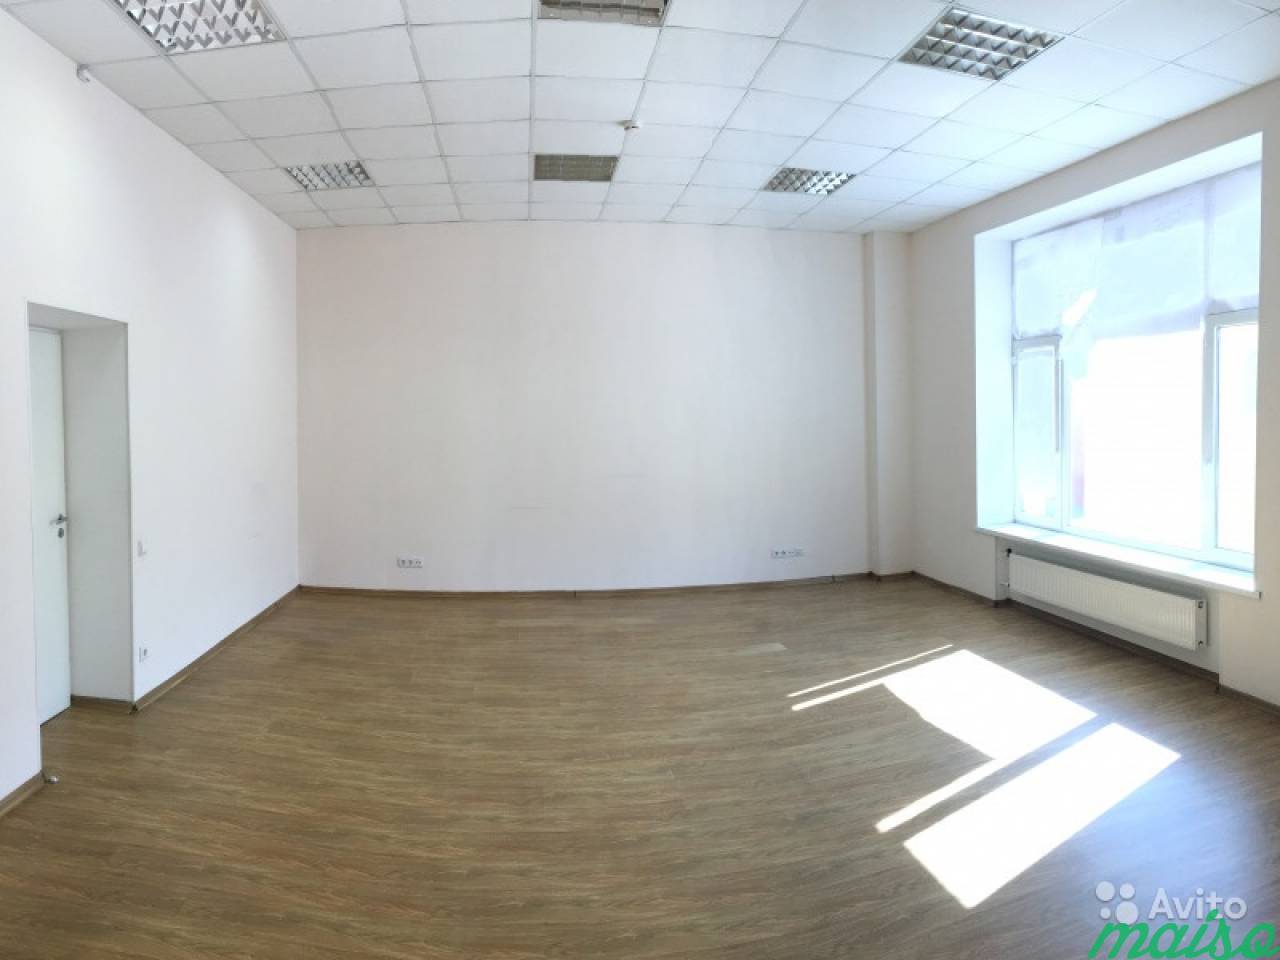 Офис 53м² от собственника. всё включено в Санкт-Петербурге. Фото 1